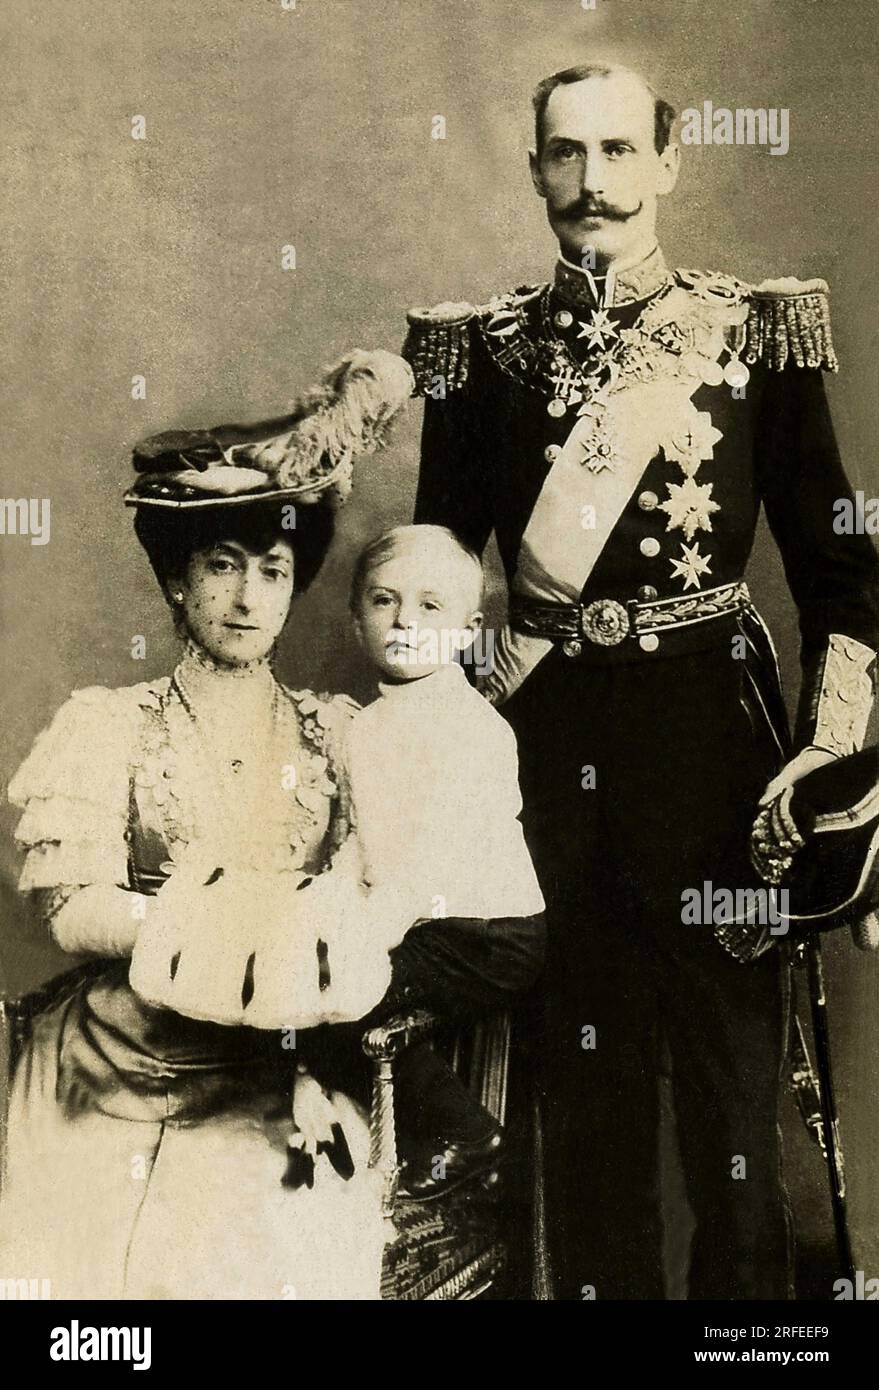 Portrait de Haakon VII (1872-1957), roi de Norvege de 1905 a 1957 et la reine Maud. Photographie, Debüt du 20e siecle. Stockfoto